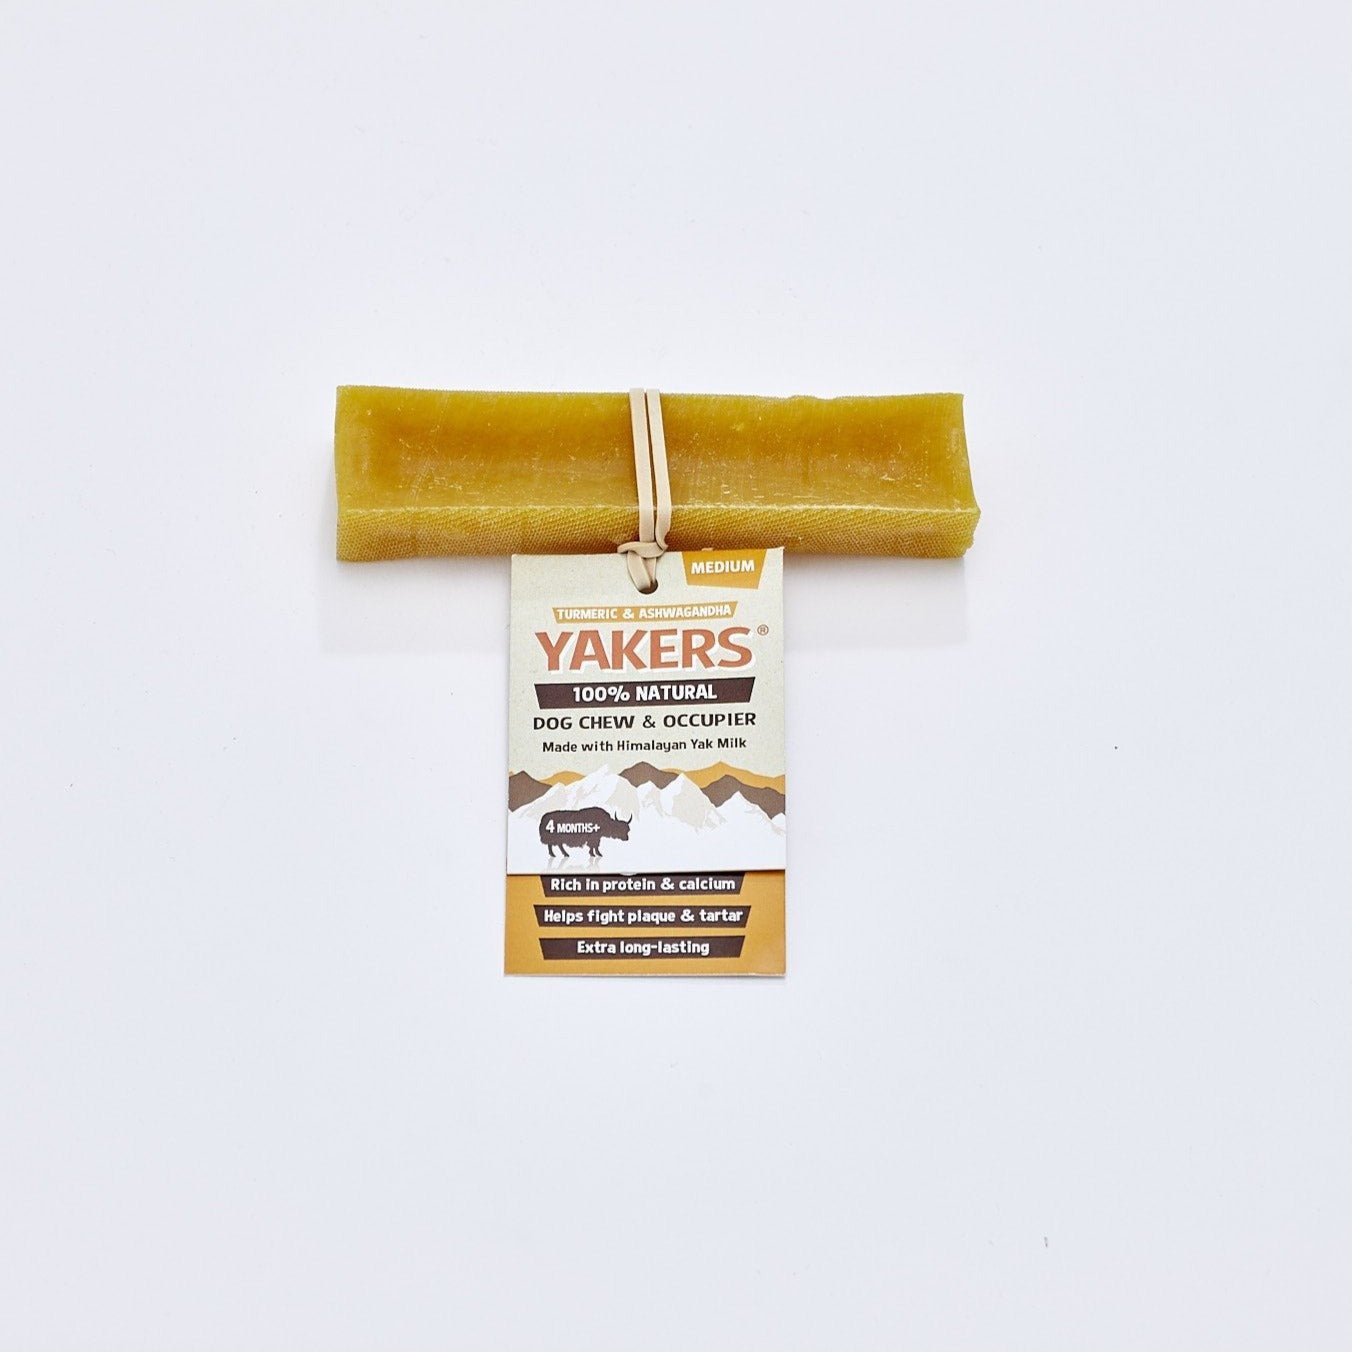 Yakers Turmeric Dog Chew, Yakers, Medium